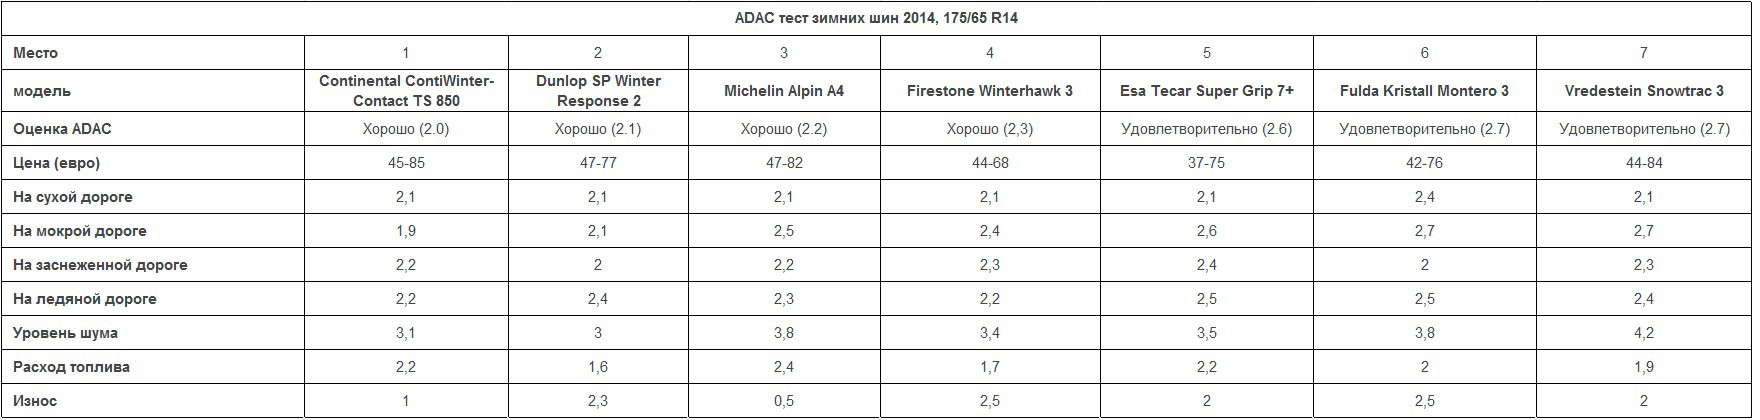 Итоги теста зимних шин 195/65 R15 2014